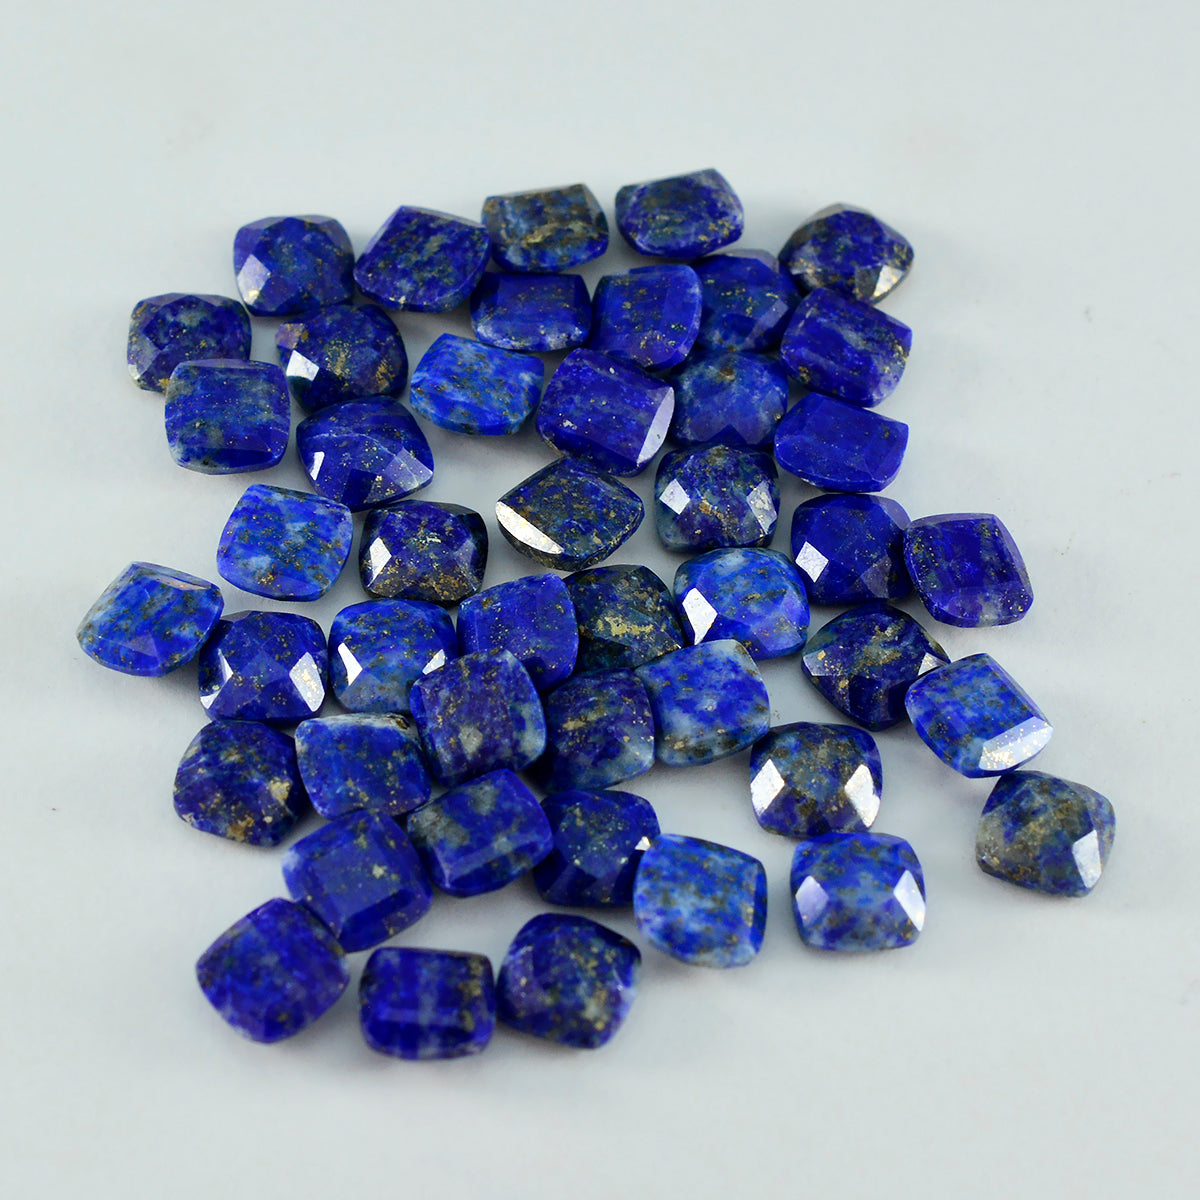 Riyogems 1PC Natural Blue Lapis Lazuli Faceted 7x7 mm Cushion Shape amazing Quality Loose Gemstone